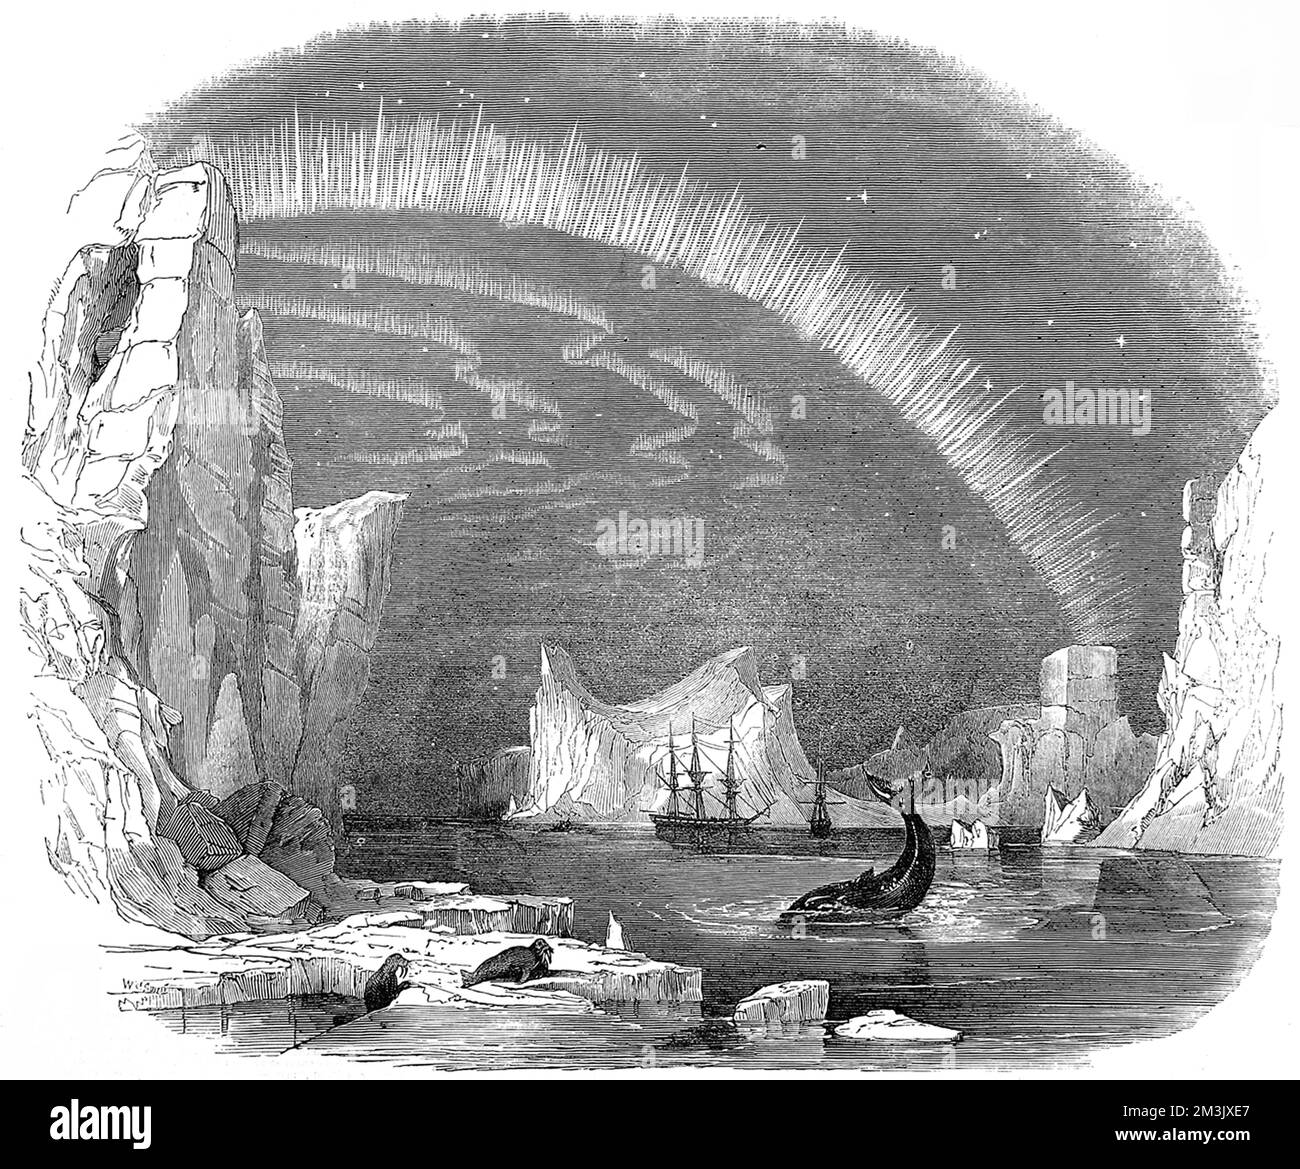 Imaginäre Szene mit einer britischen Arktis-Expedition in der Arktis, ca.1849. Die Gravur zeigt zwei Schiffe im Hintergrund, mit Eisbergen, Walrossen, einem Wal und der Aurora Borealis ebenfalls sichtbar. Dieses Bild wurde erstellt, um den Lesern der „illustrierten London News“ eine Vorstellung von den Bedingungen zu geben, denen die Franklin- und Ross-Expeditionen der 1840er Jahre in der Arktis begegnen könnten. Stockfoto